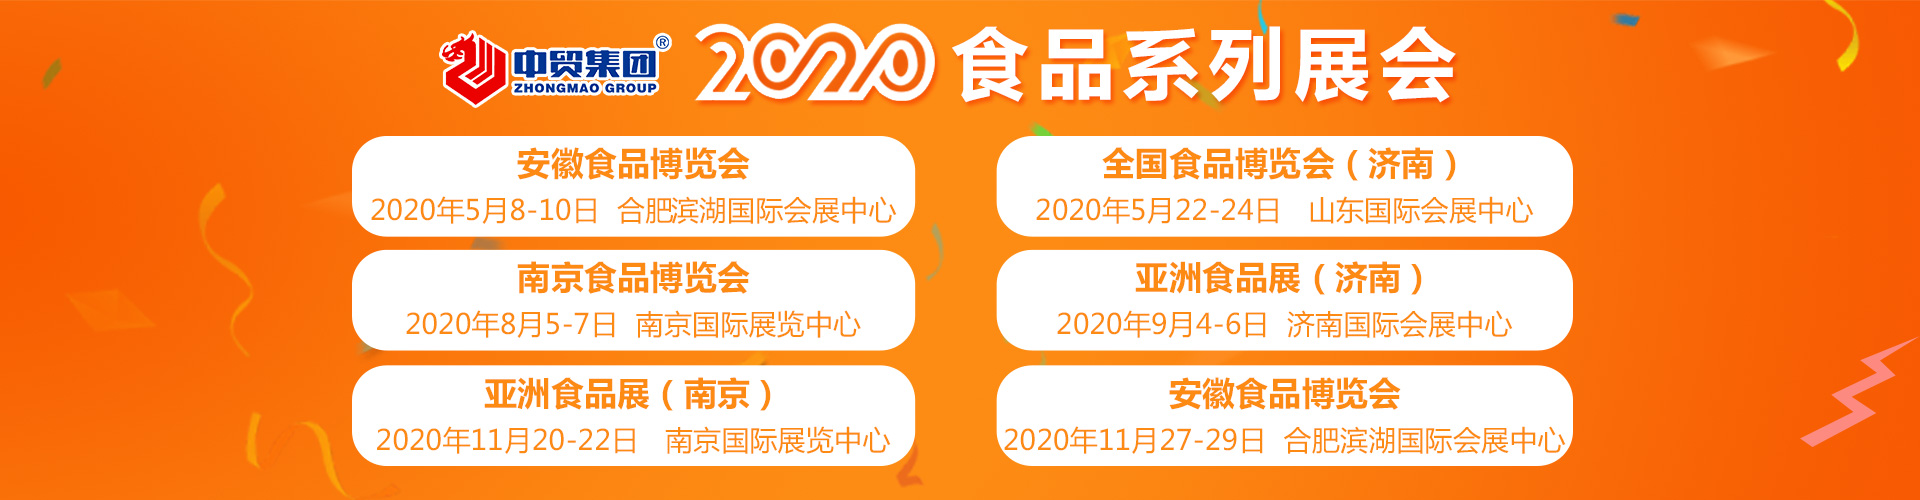 南京2020*八届中国南京食品博览会现场活动 南京糖酒会 名企推荐